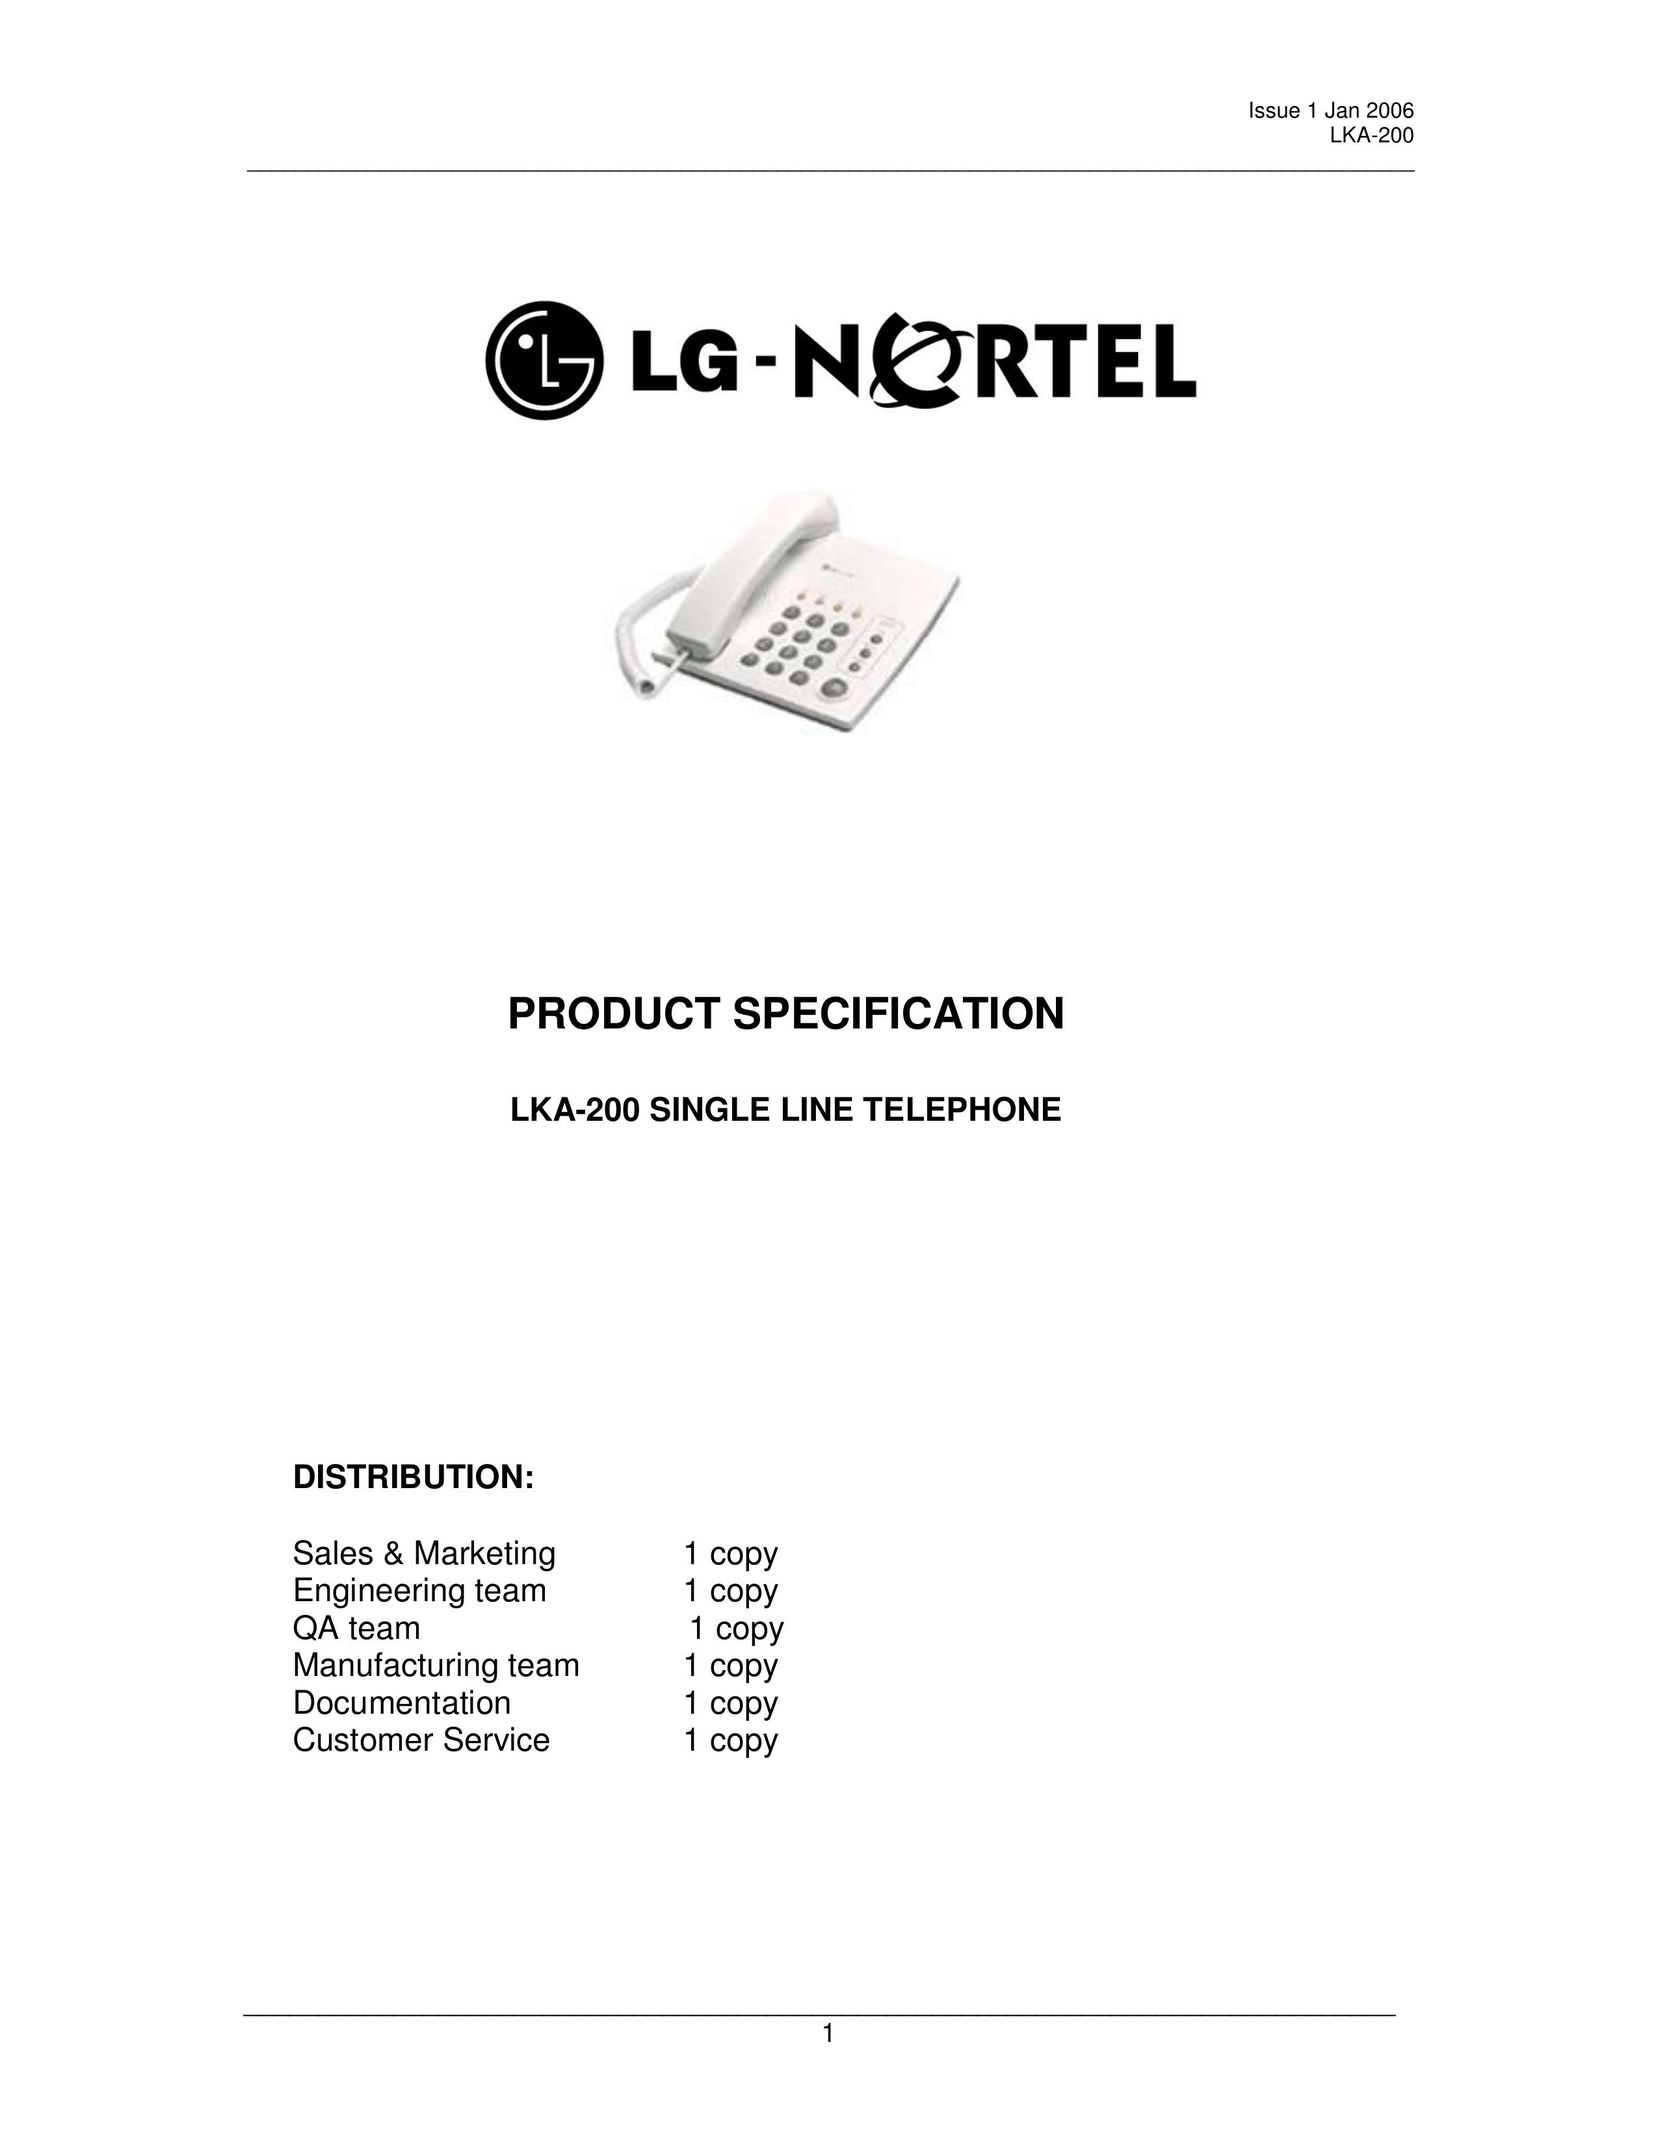 LG Electronics LKA-200 Telephone User Manual